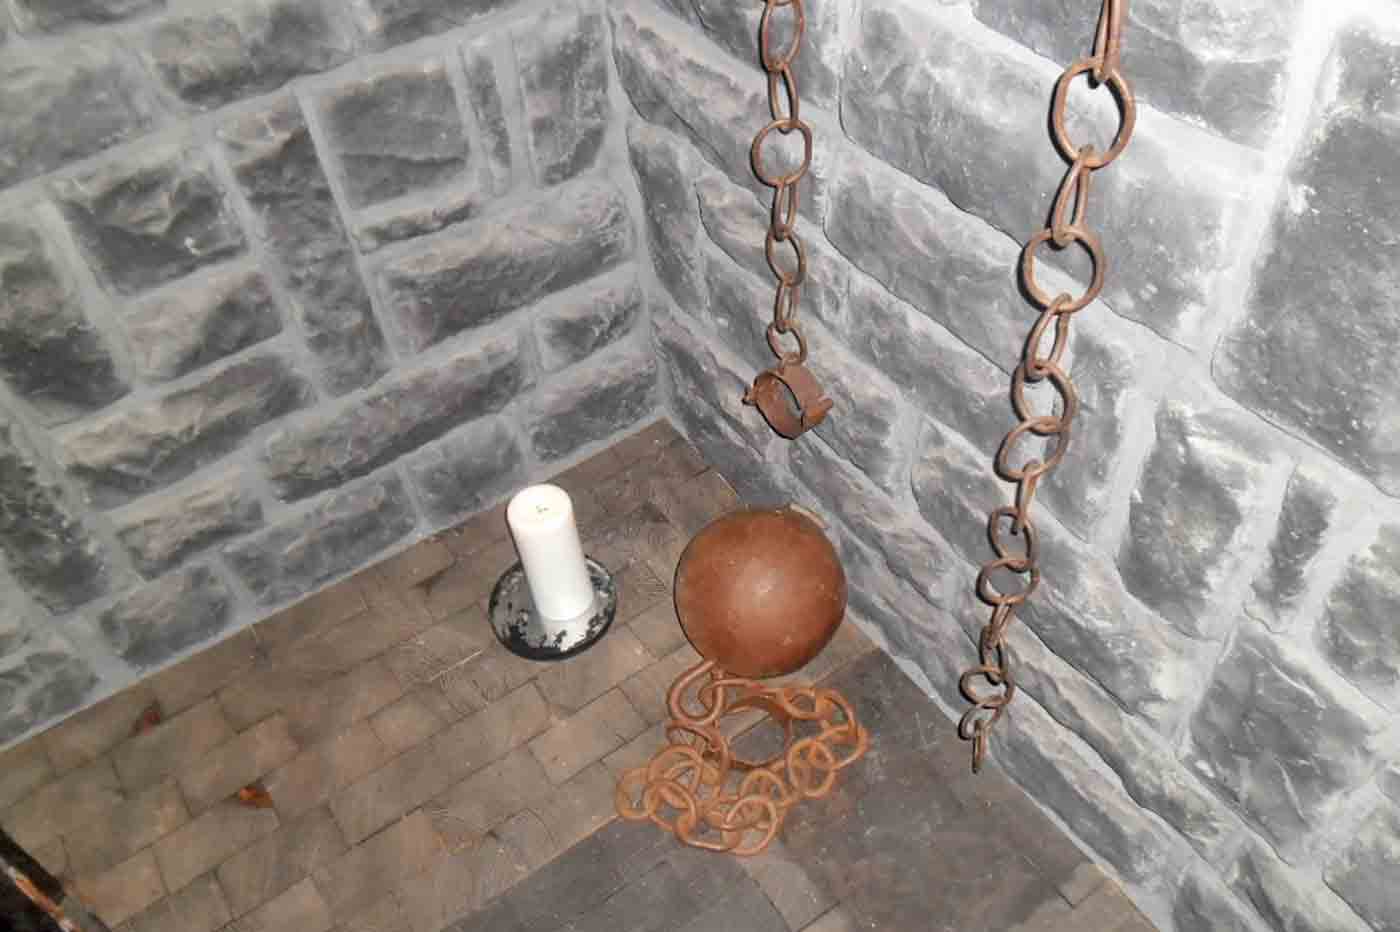 Tortureum -  Museum of Torture